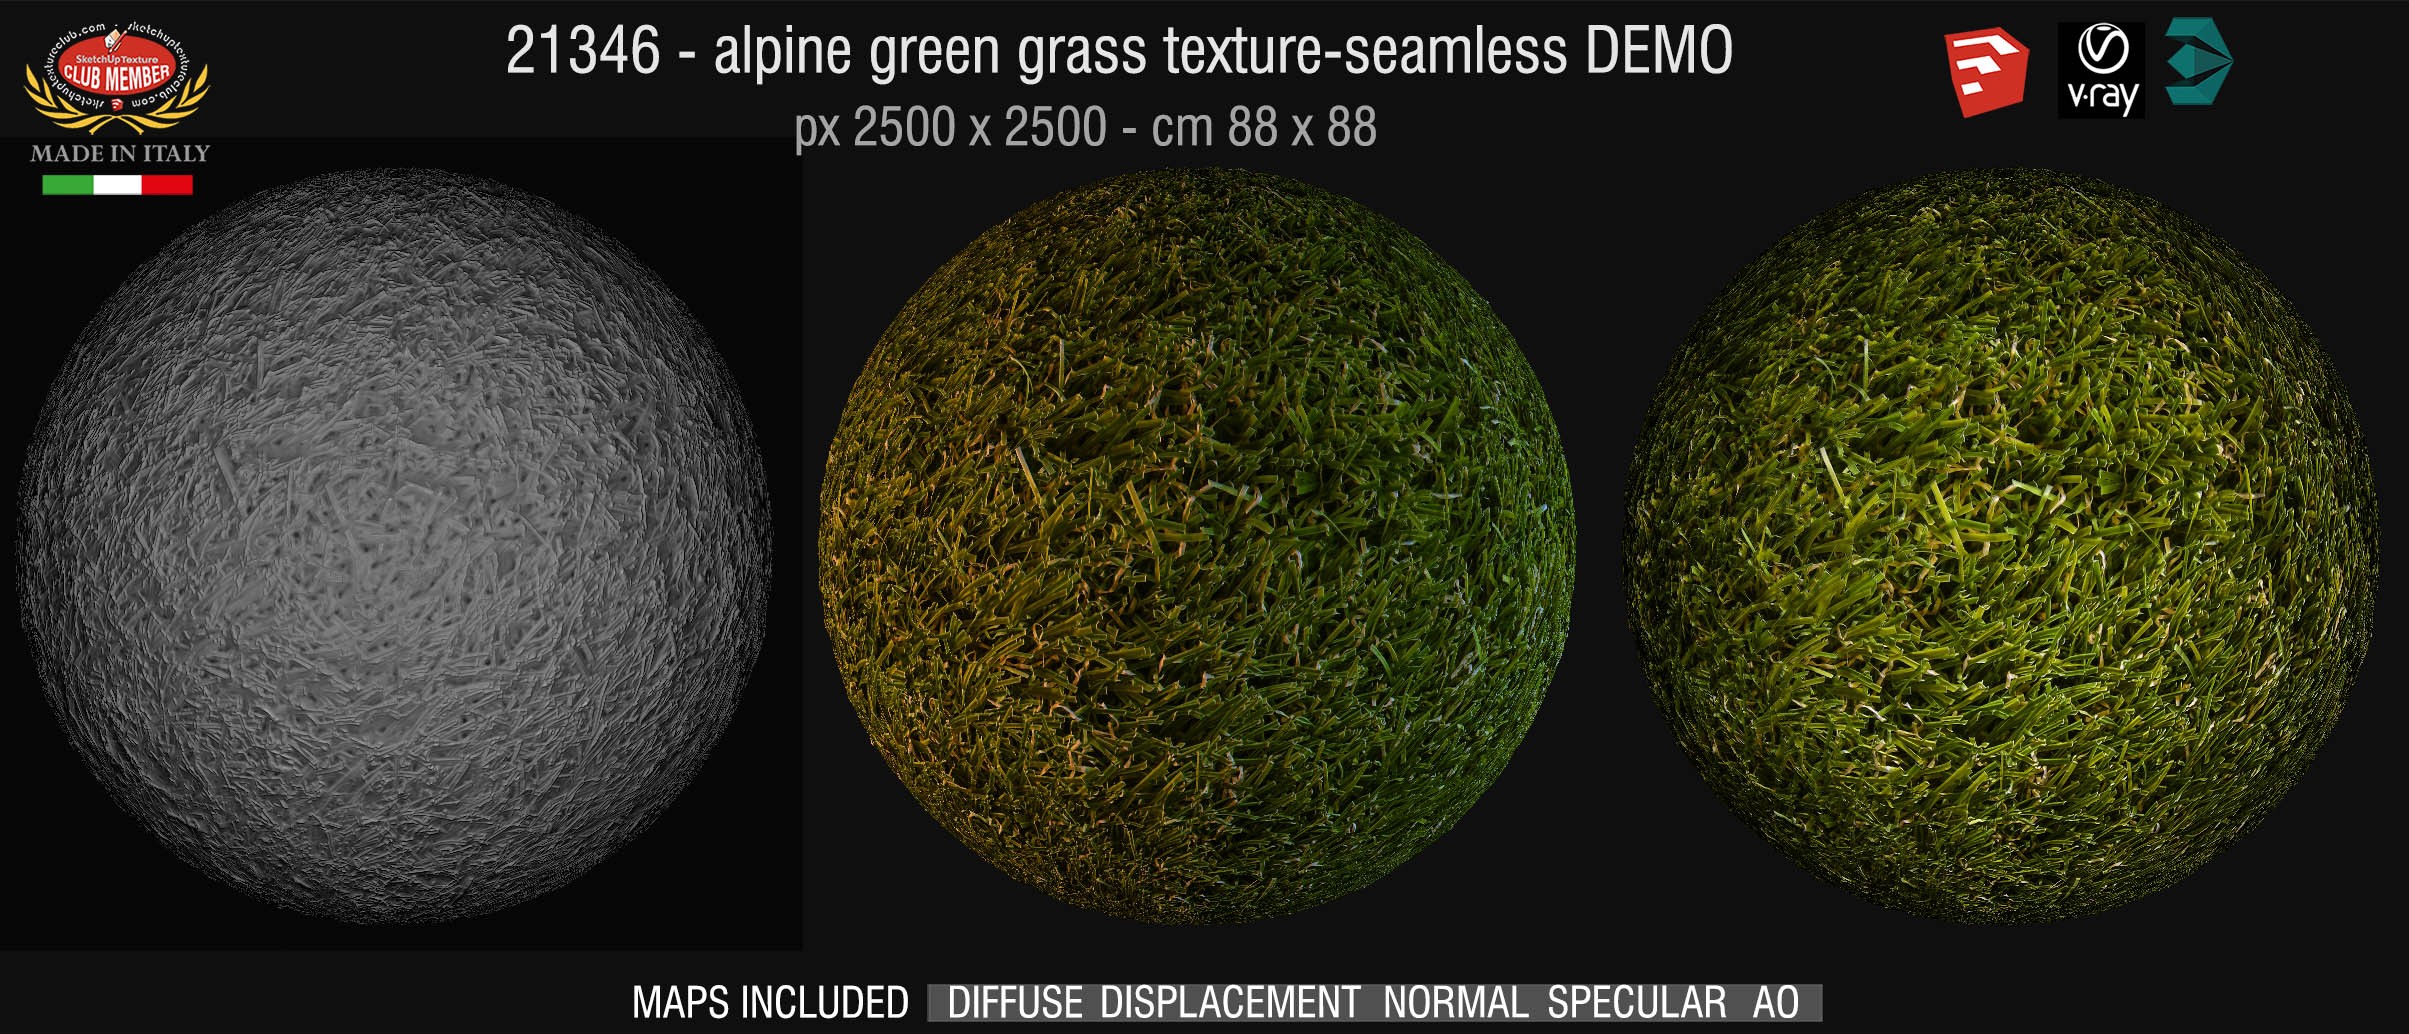 21346 HR alpine green grass texture + maps DEMO